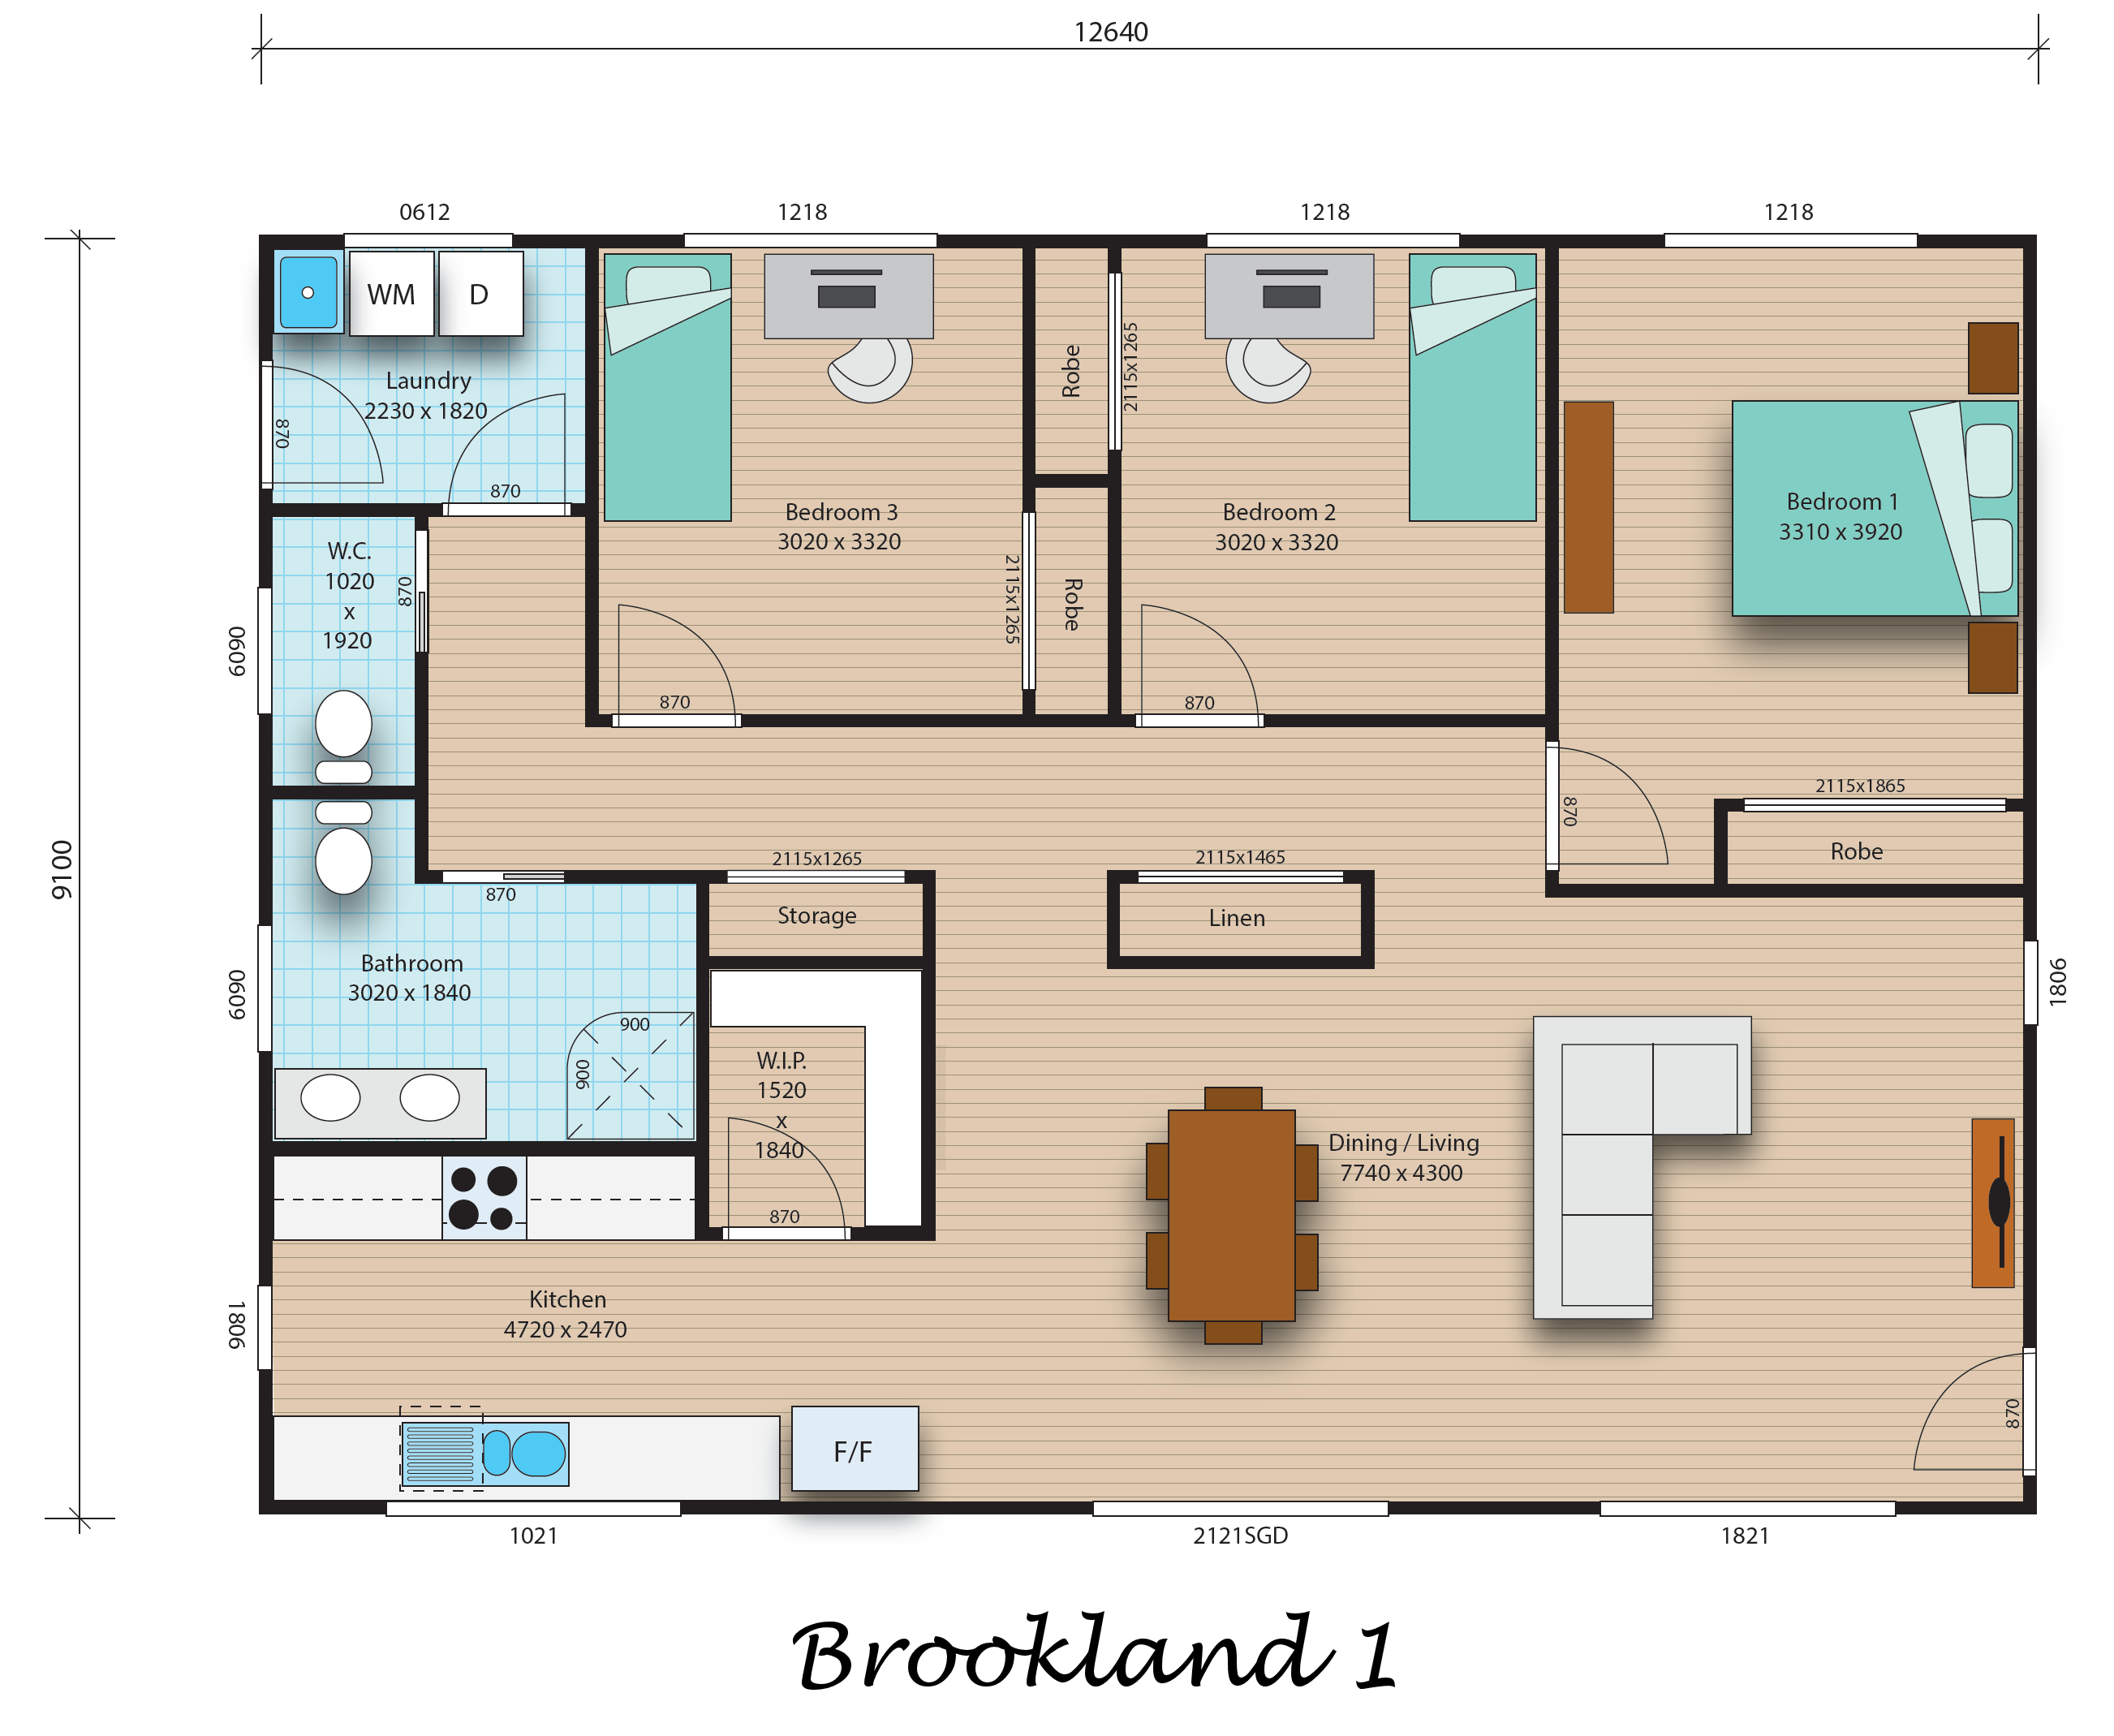 Brookland 1 floorplan image